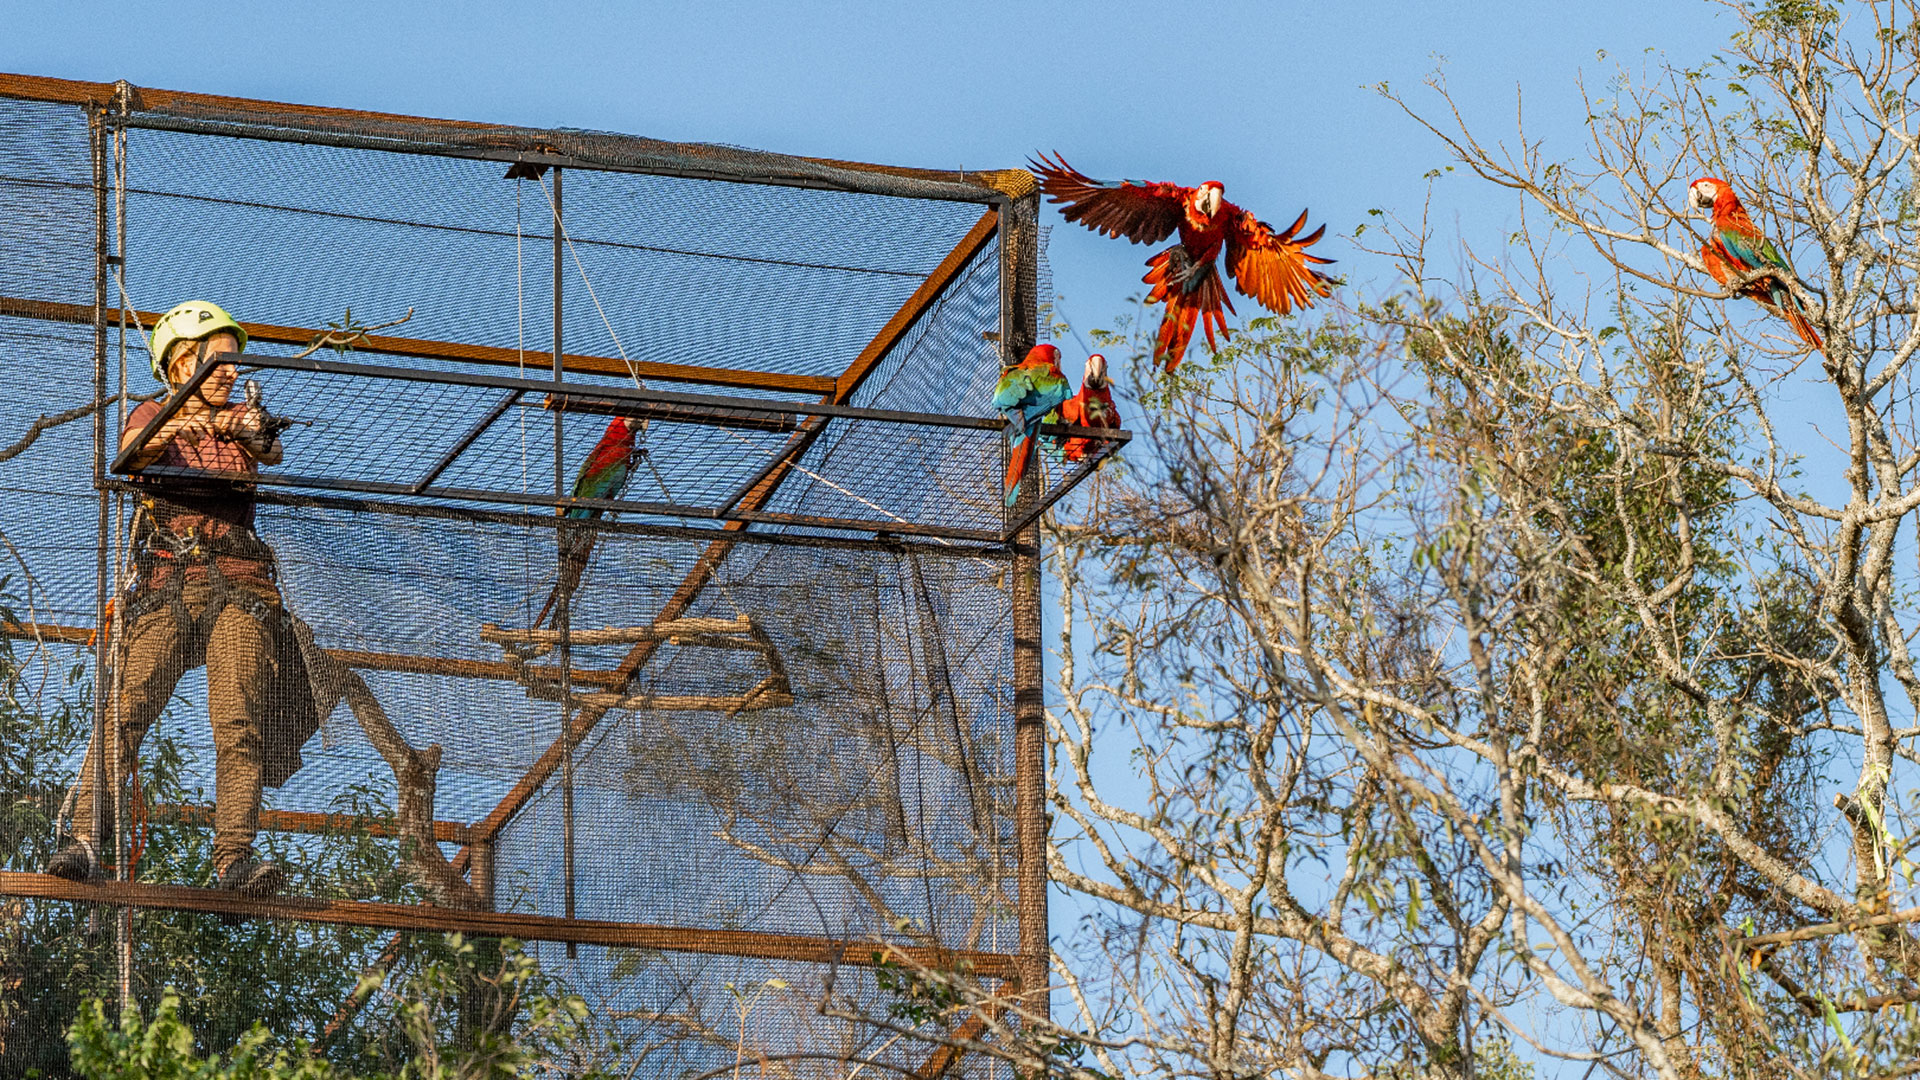 Proyecto de Reintroducción de Guacamayo Rojo en Parque Iberá (foto: Rewilding Argentina)